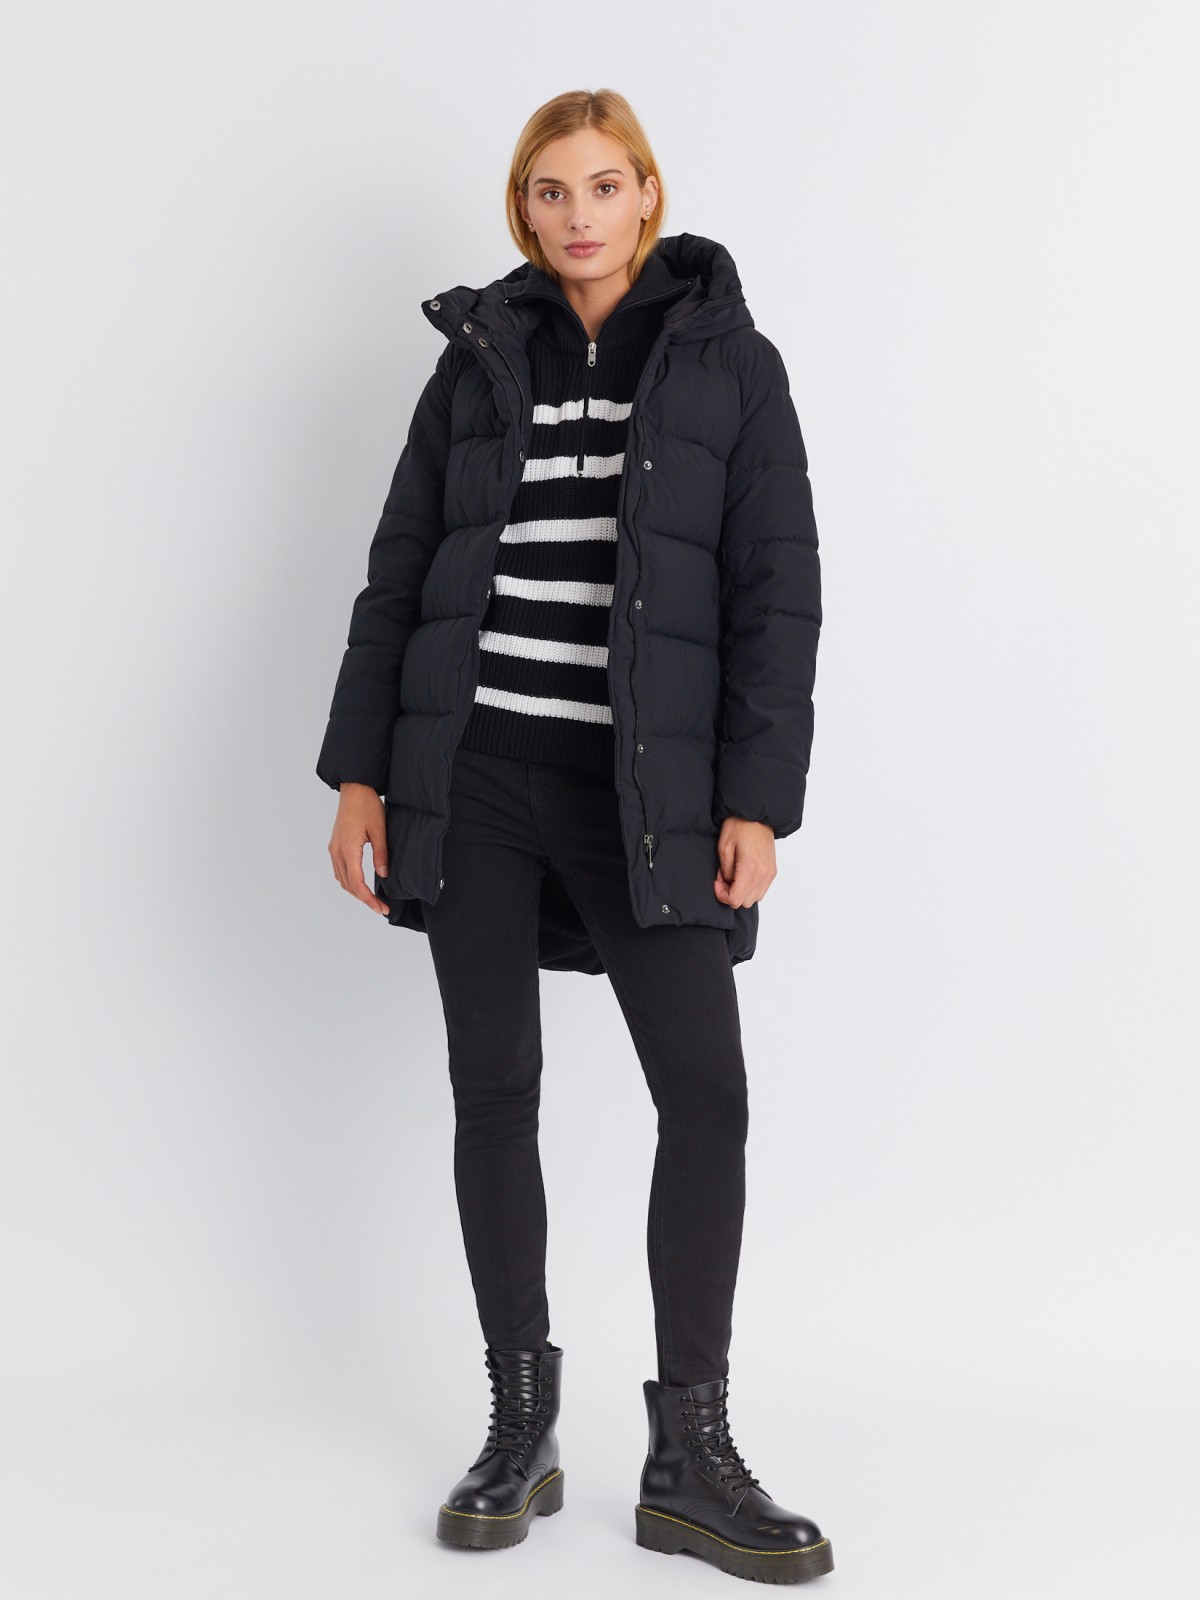 Тёплая стёганая куртка-пальто удлинённого фасона с капюшоном zolla 02334522J144, цвет черный, размер XS - фото 2